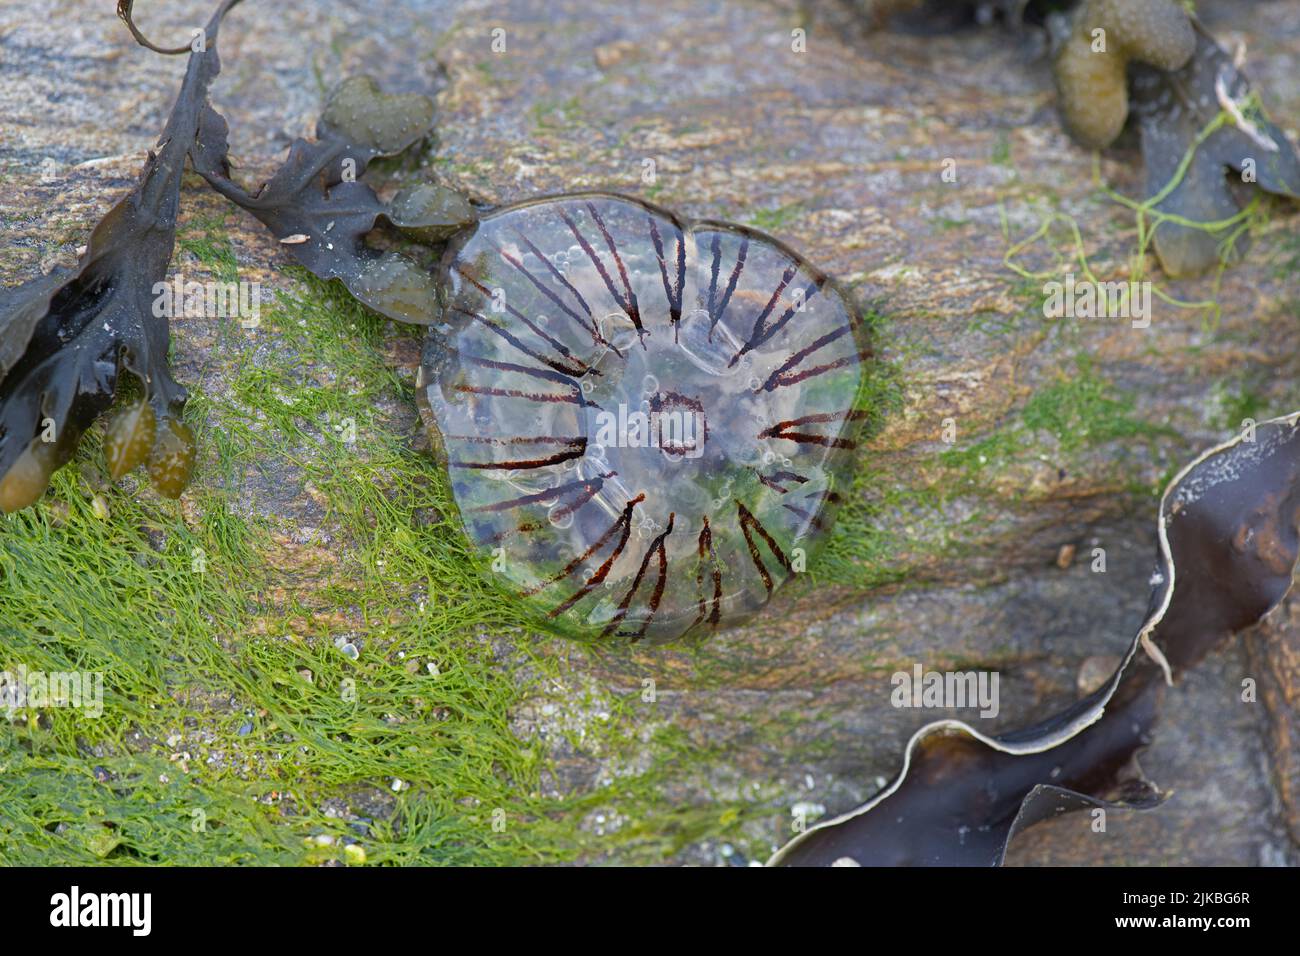 Boussole méduse: Chrysaora hysocella. Devon, Royaume-Uni Banque D'Images